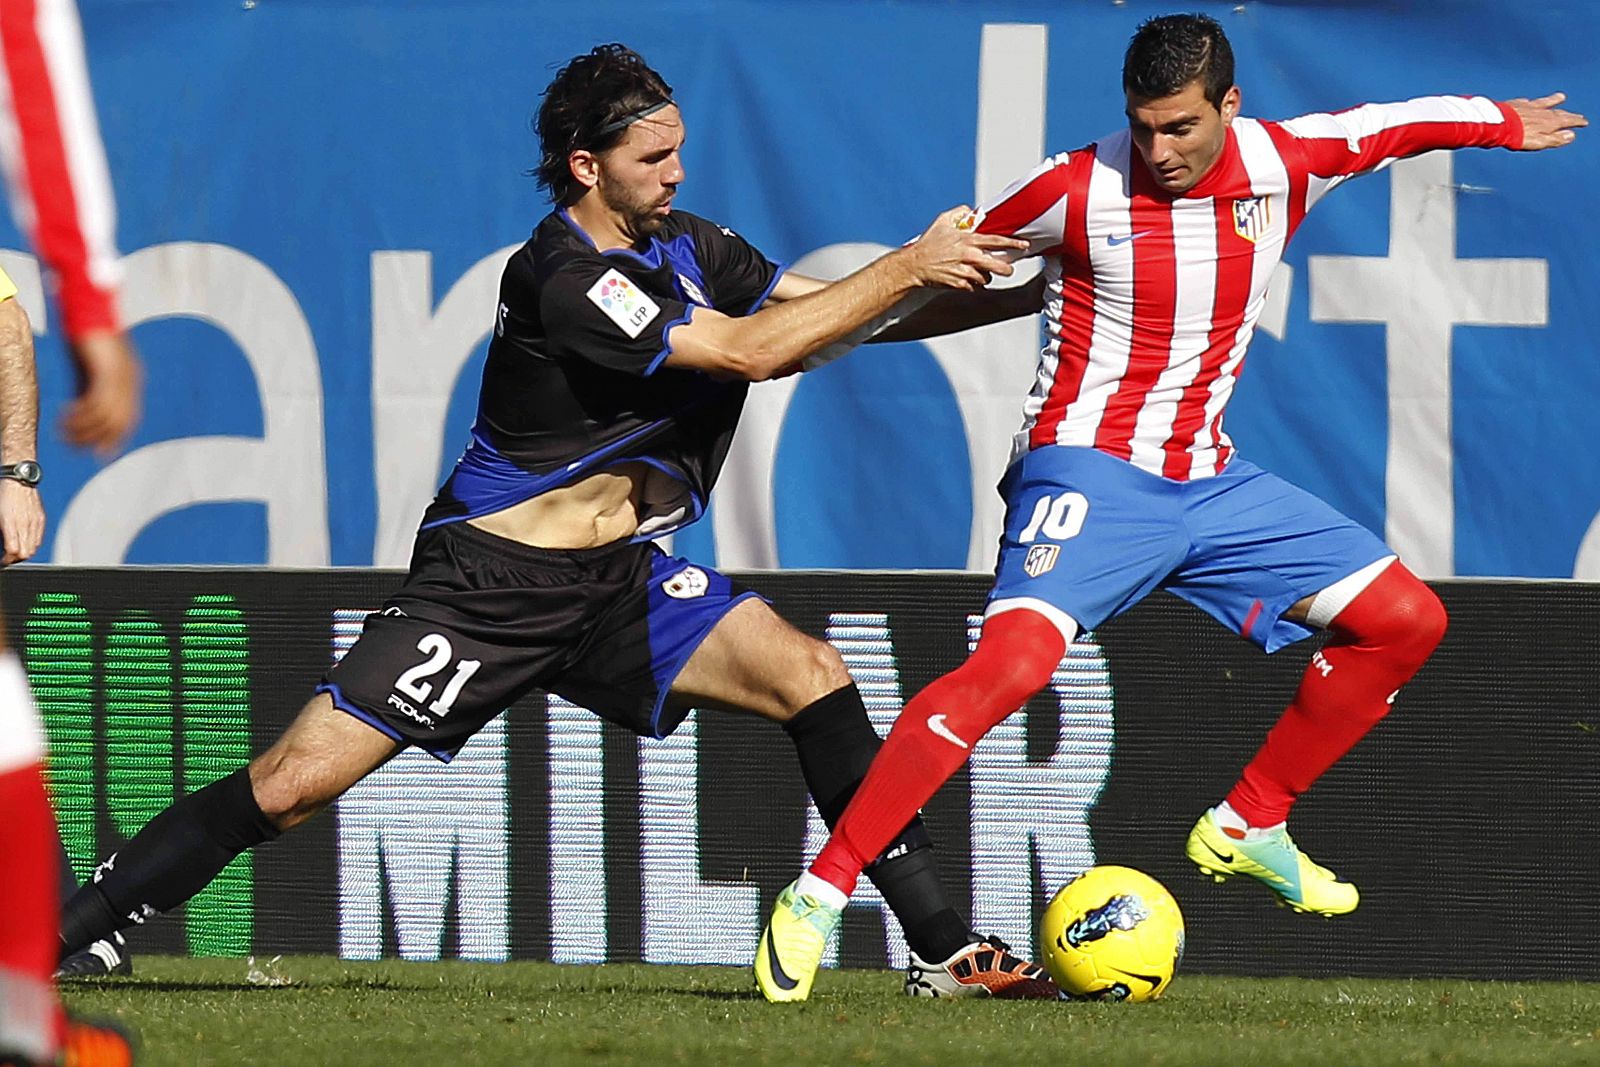 El centrocampista del Atlético de Madrid José Antonio Reyes (d) pelea un balón con el defensa del Rayo Vallecano Jordi Figueras